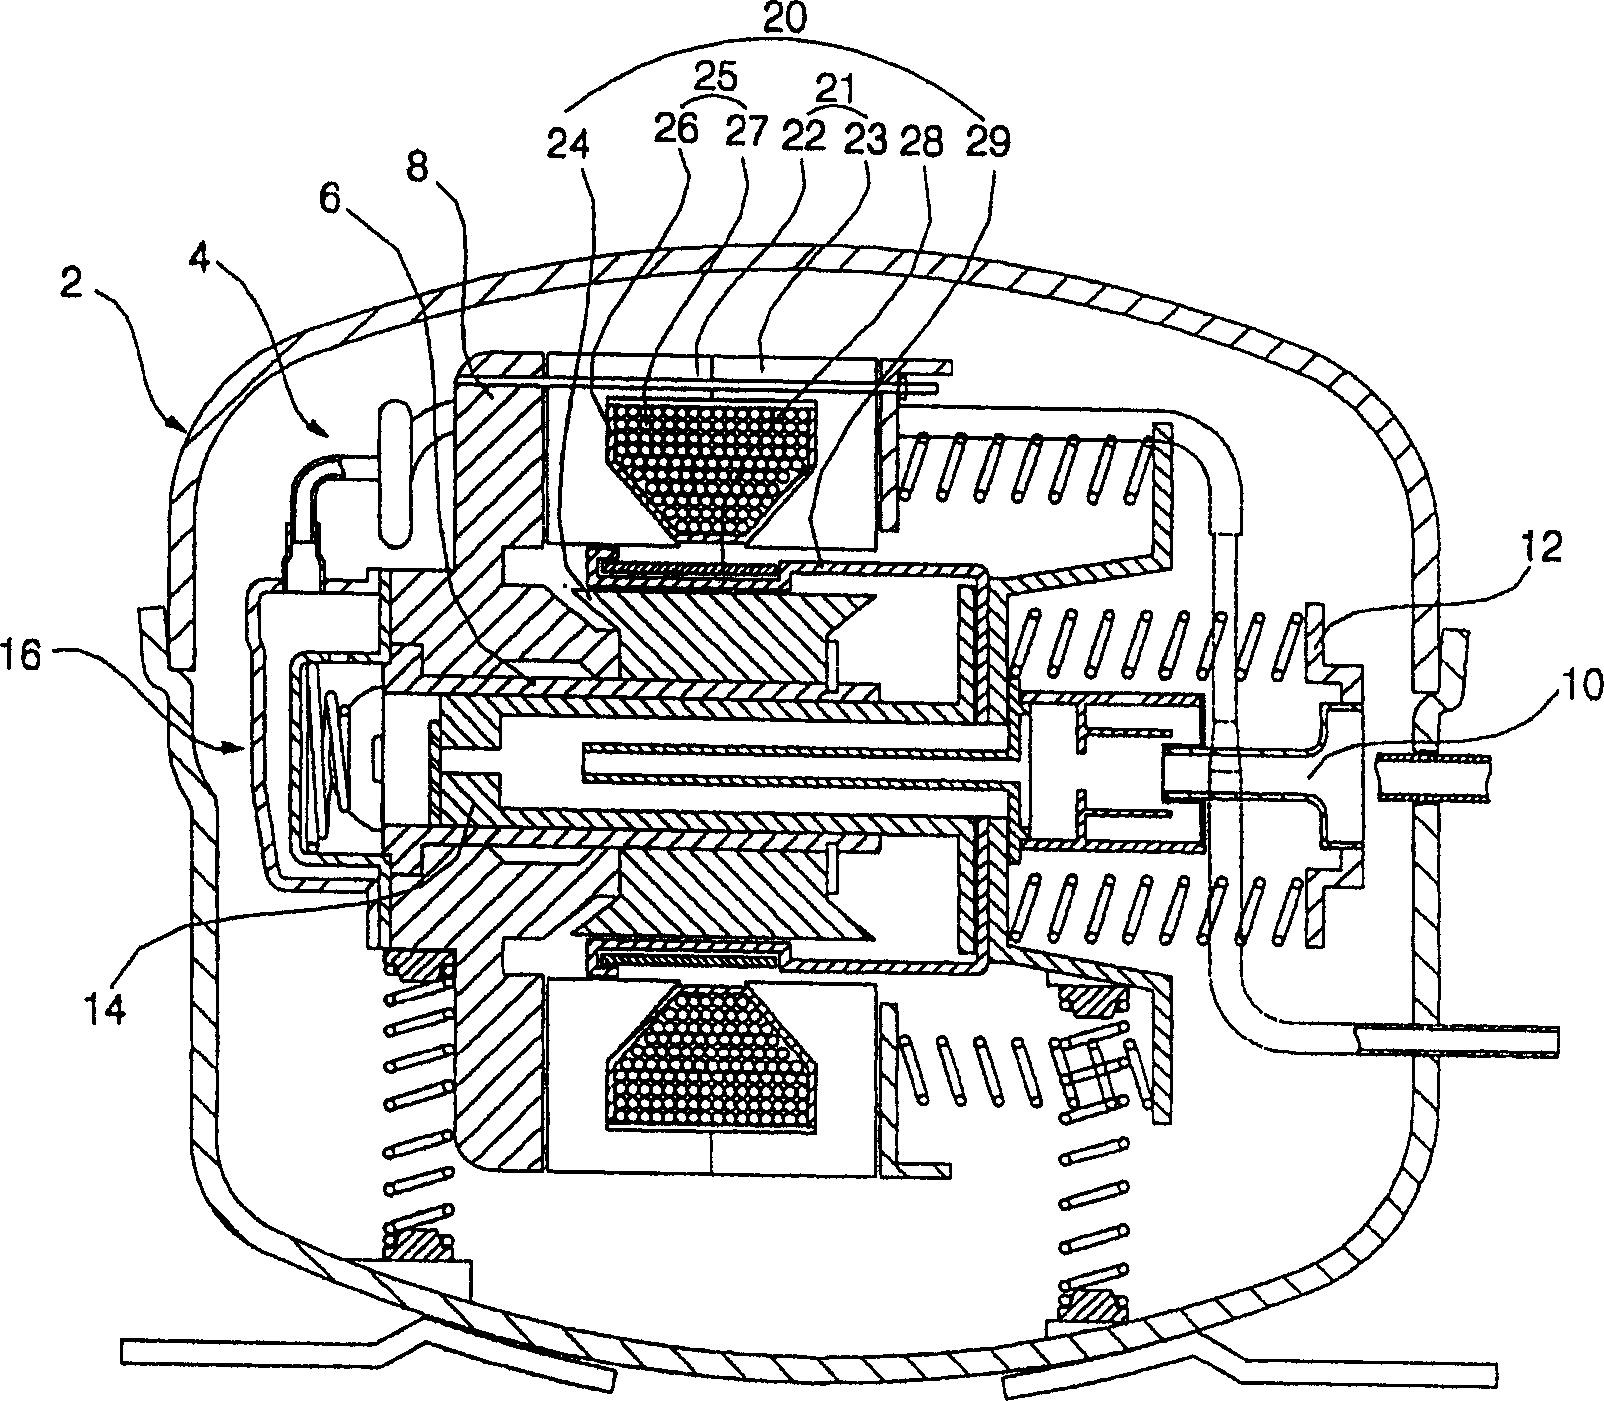 Stator of linear motor